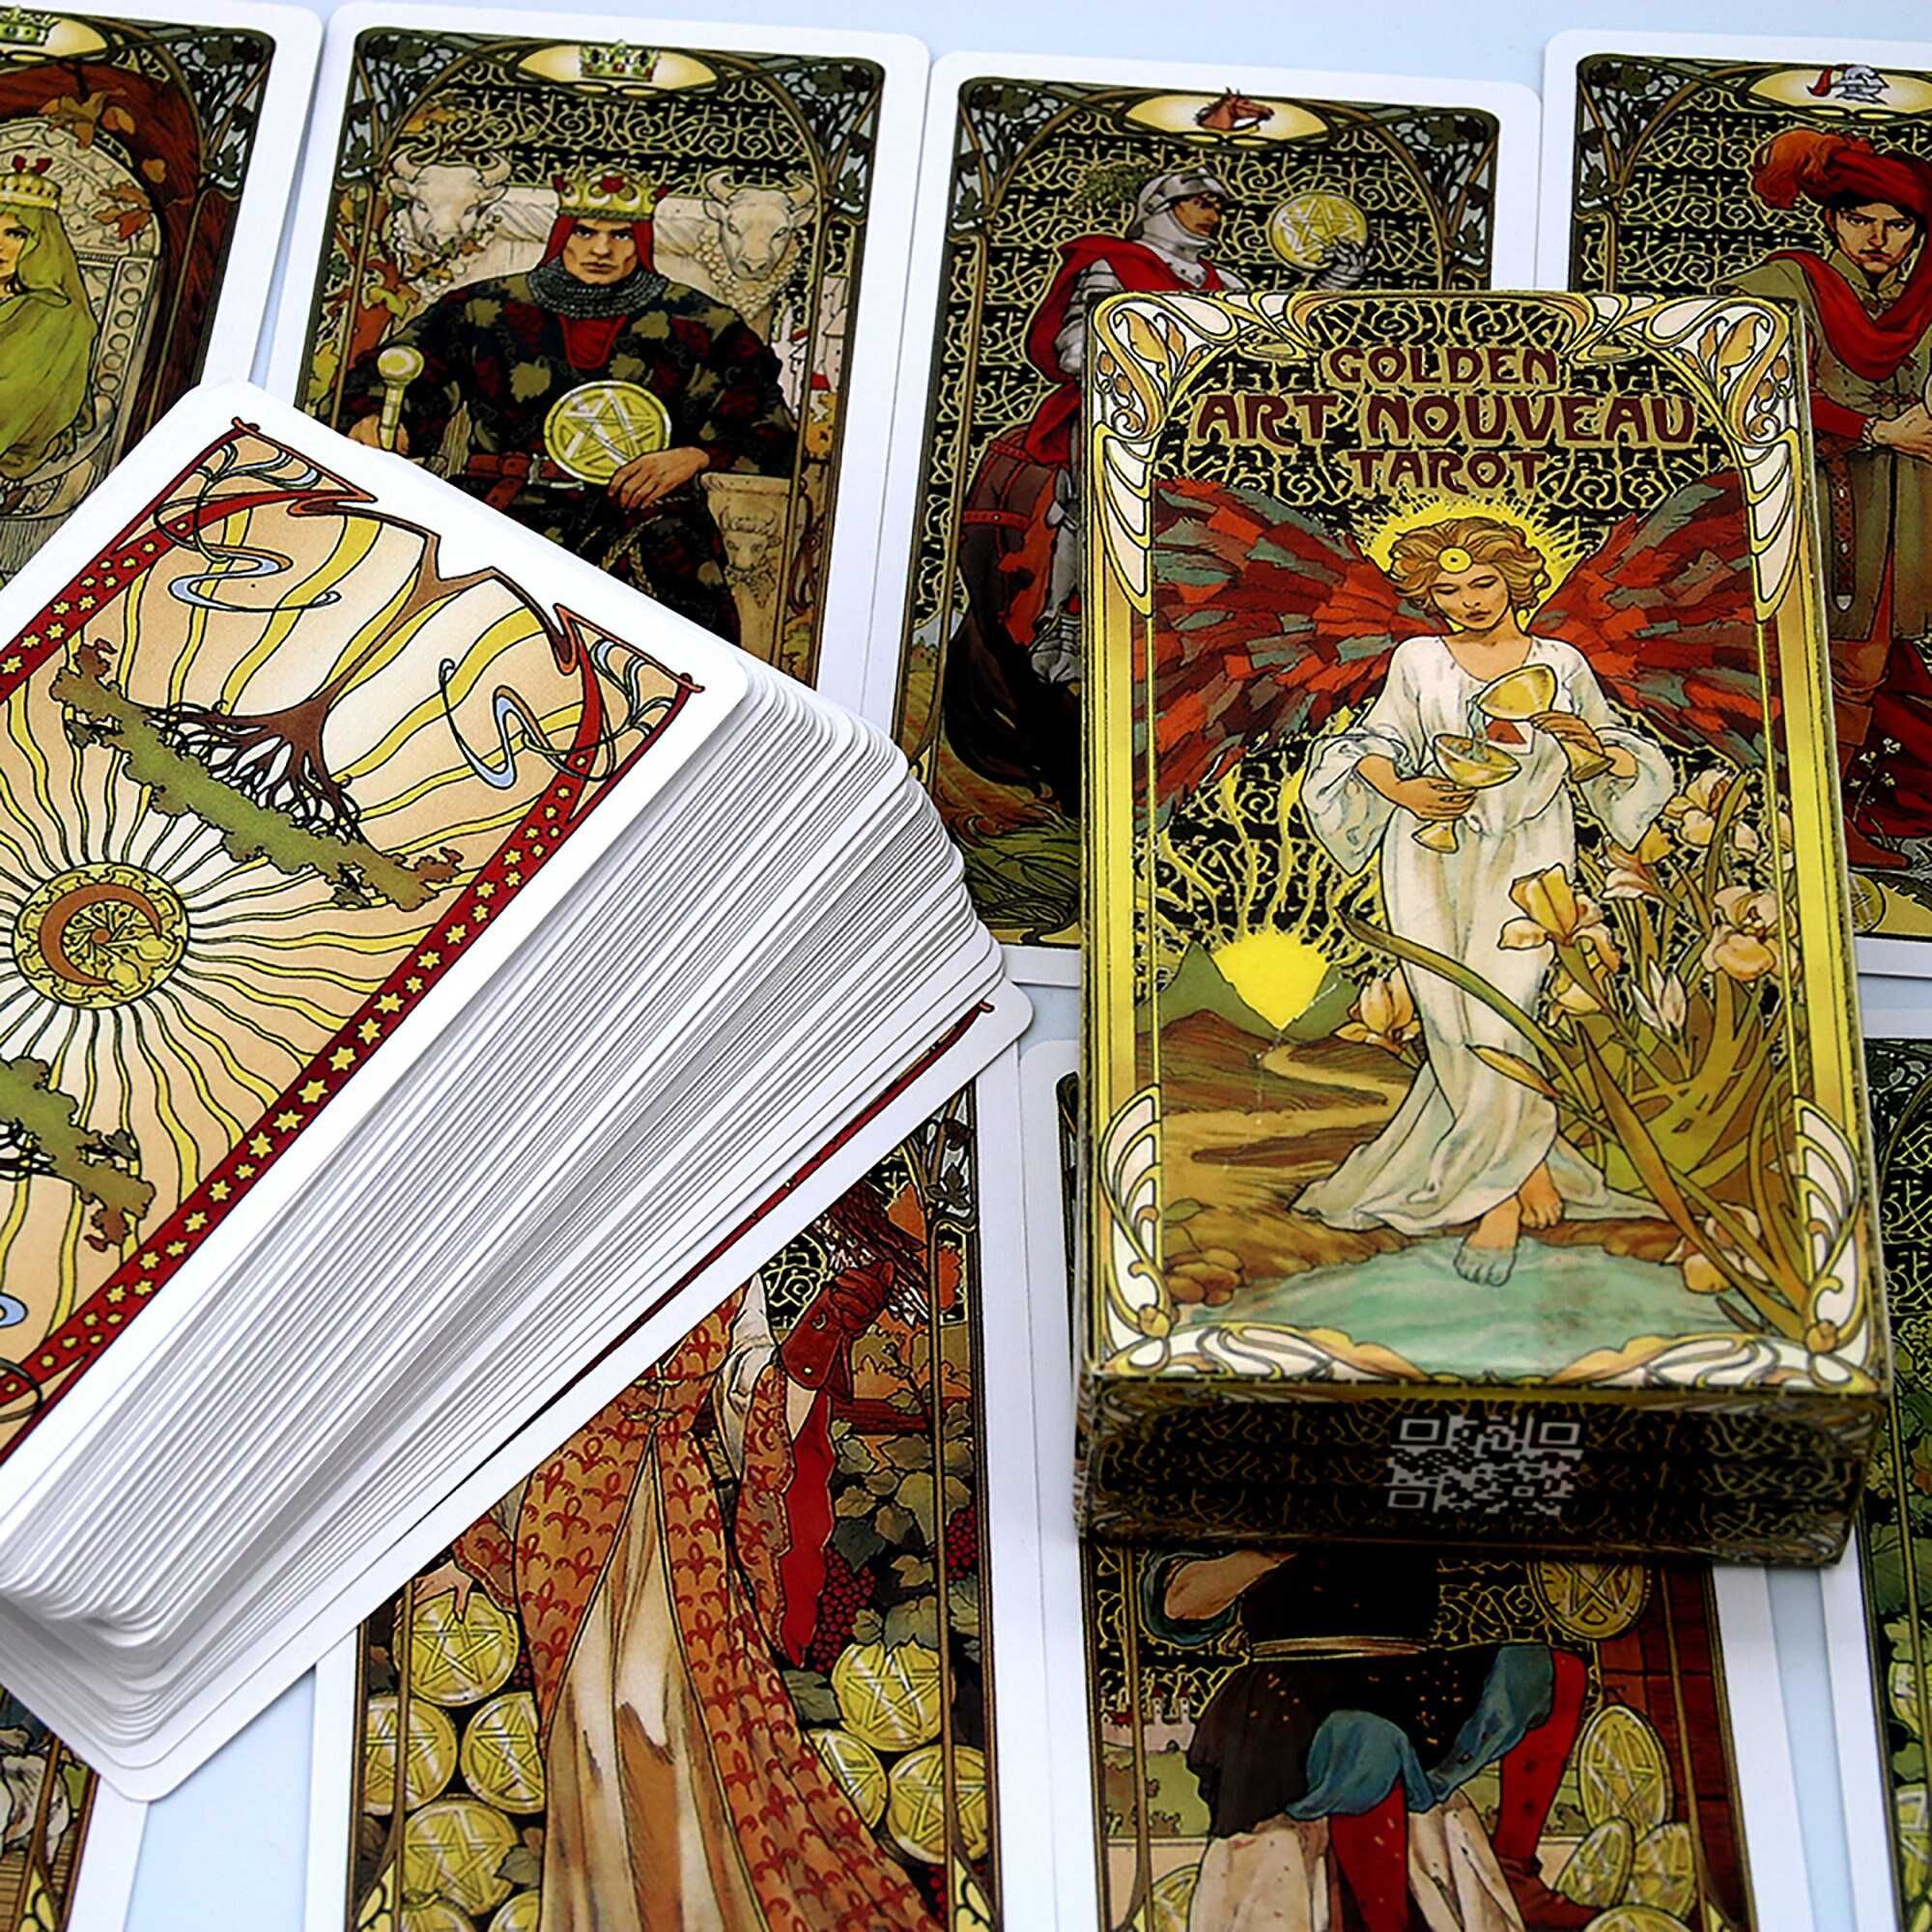 Modern Witch Tarot deck и Golden Art Nouveau.